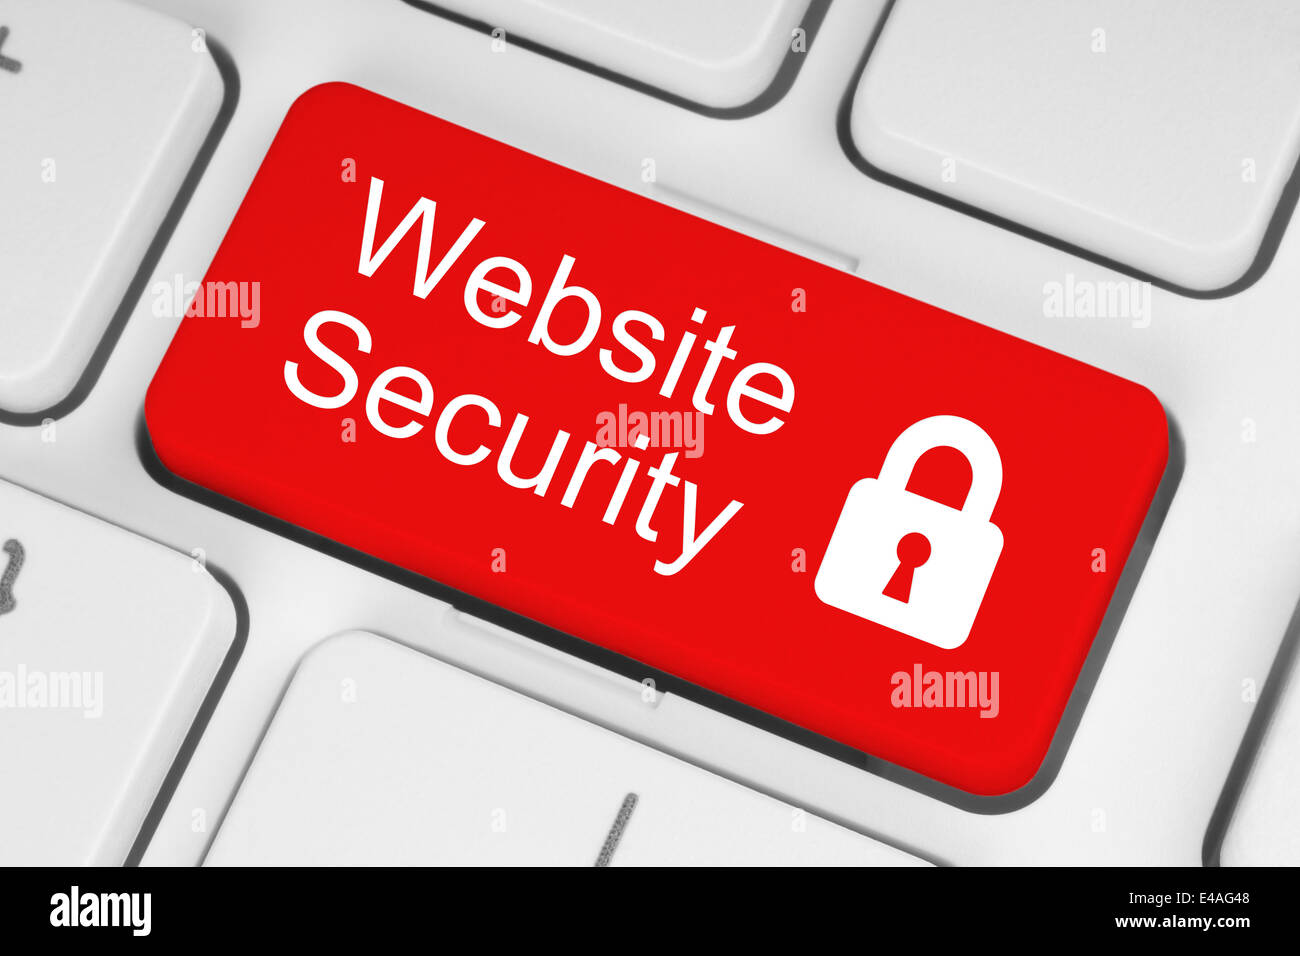 Bouton Sécurité site web rouge blanc sur fond de clavier Banque D'Images